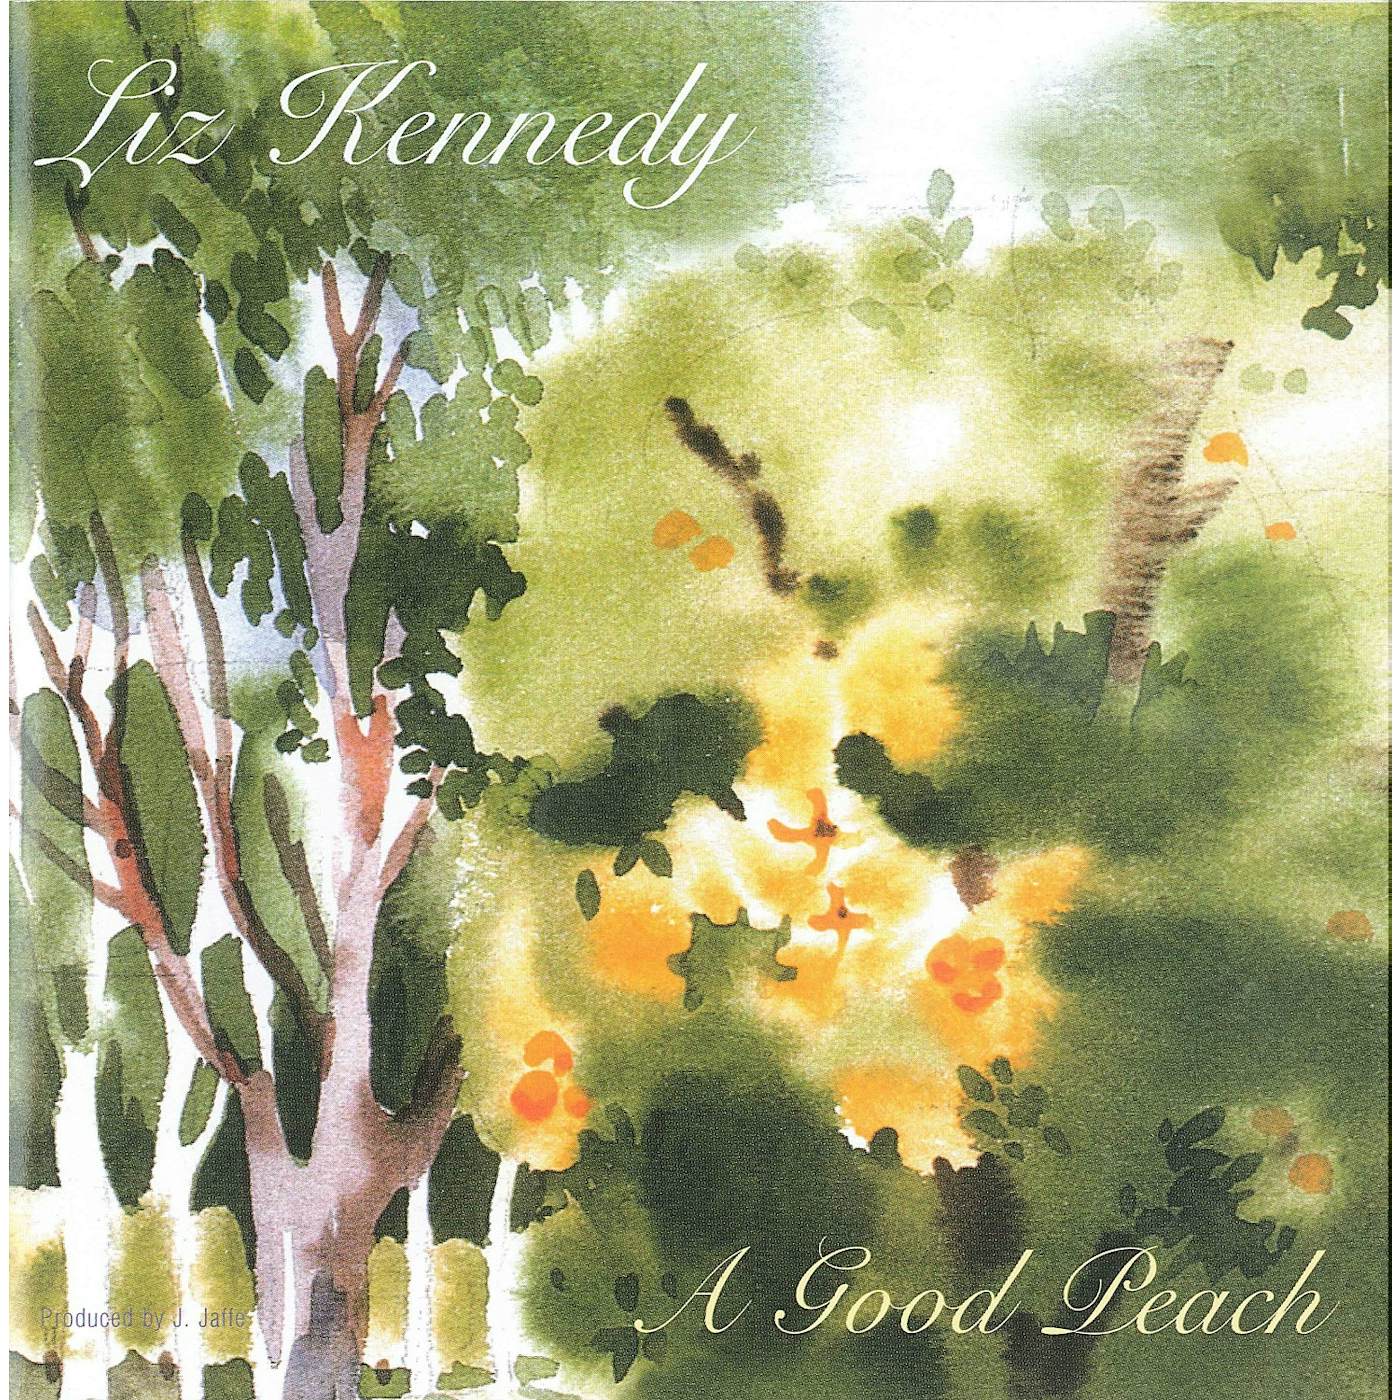 Liz Kennedy GOOD PEACH CD